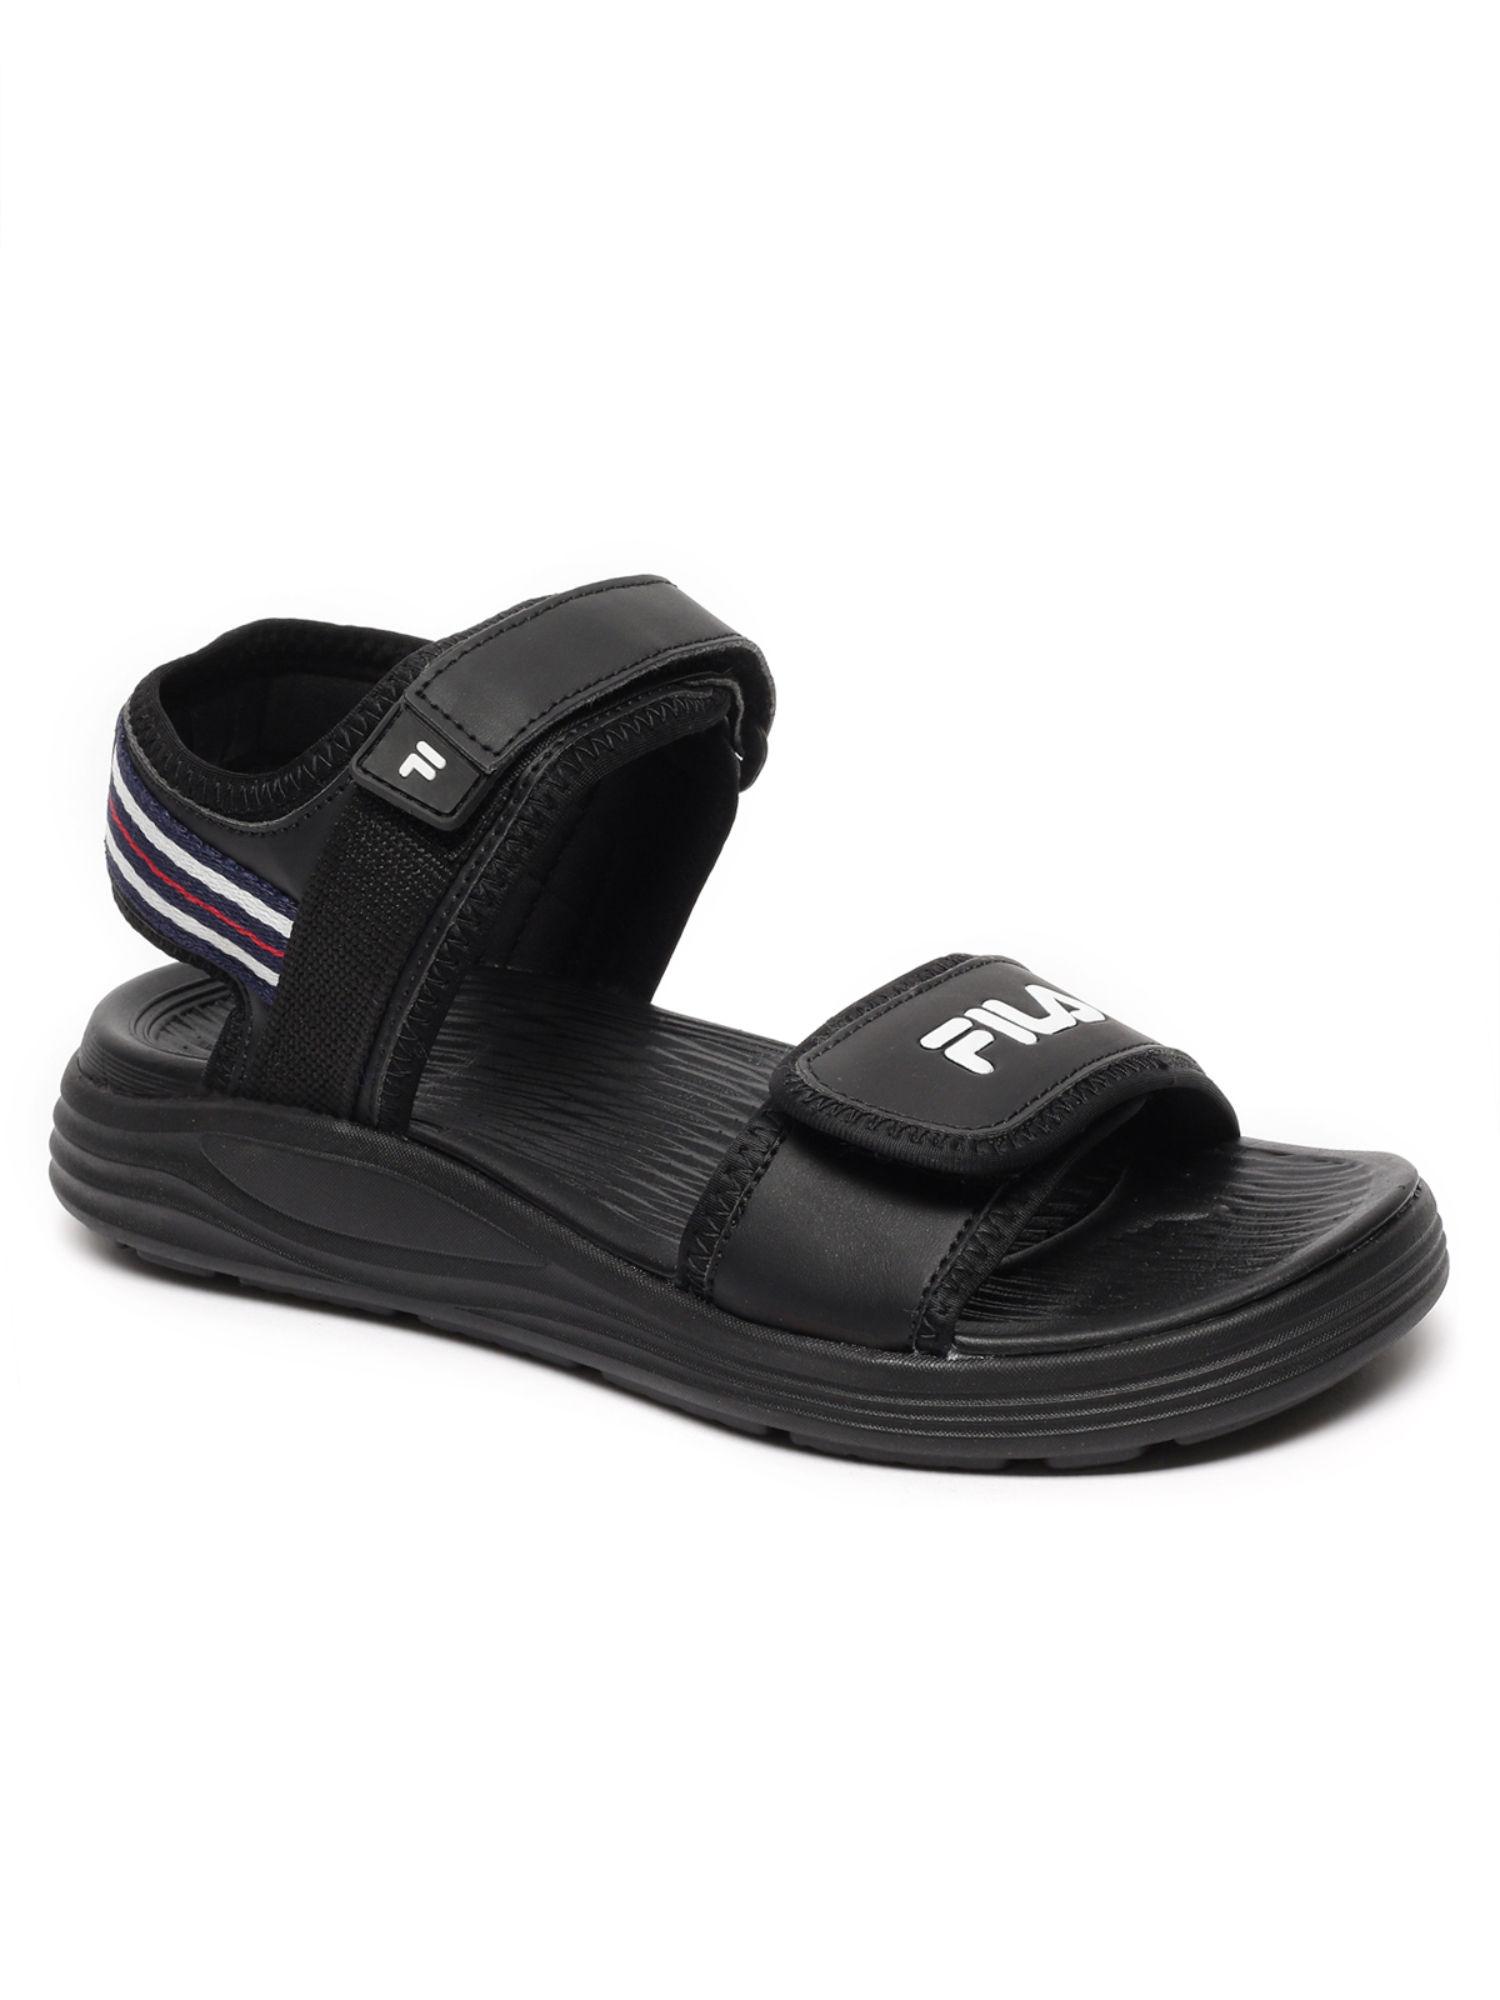 obster comfort footwear black sandals